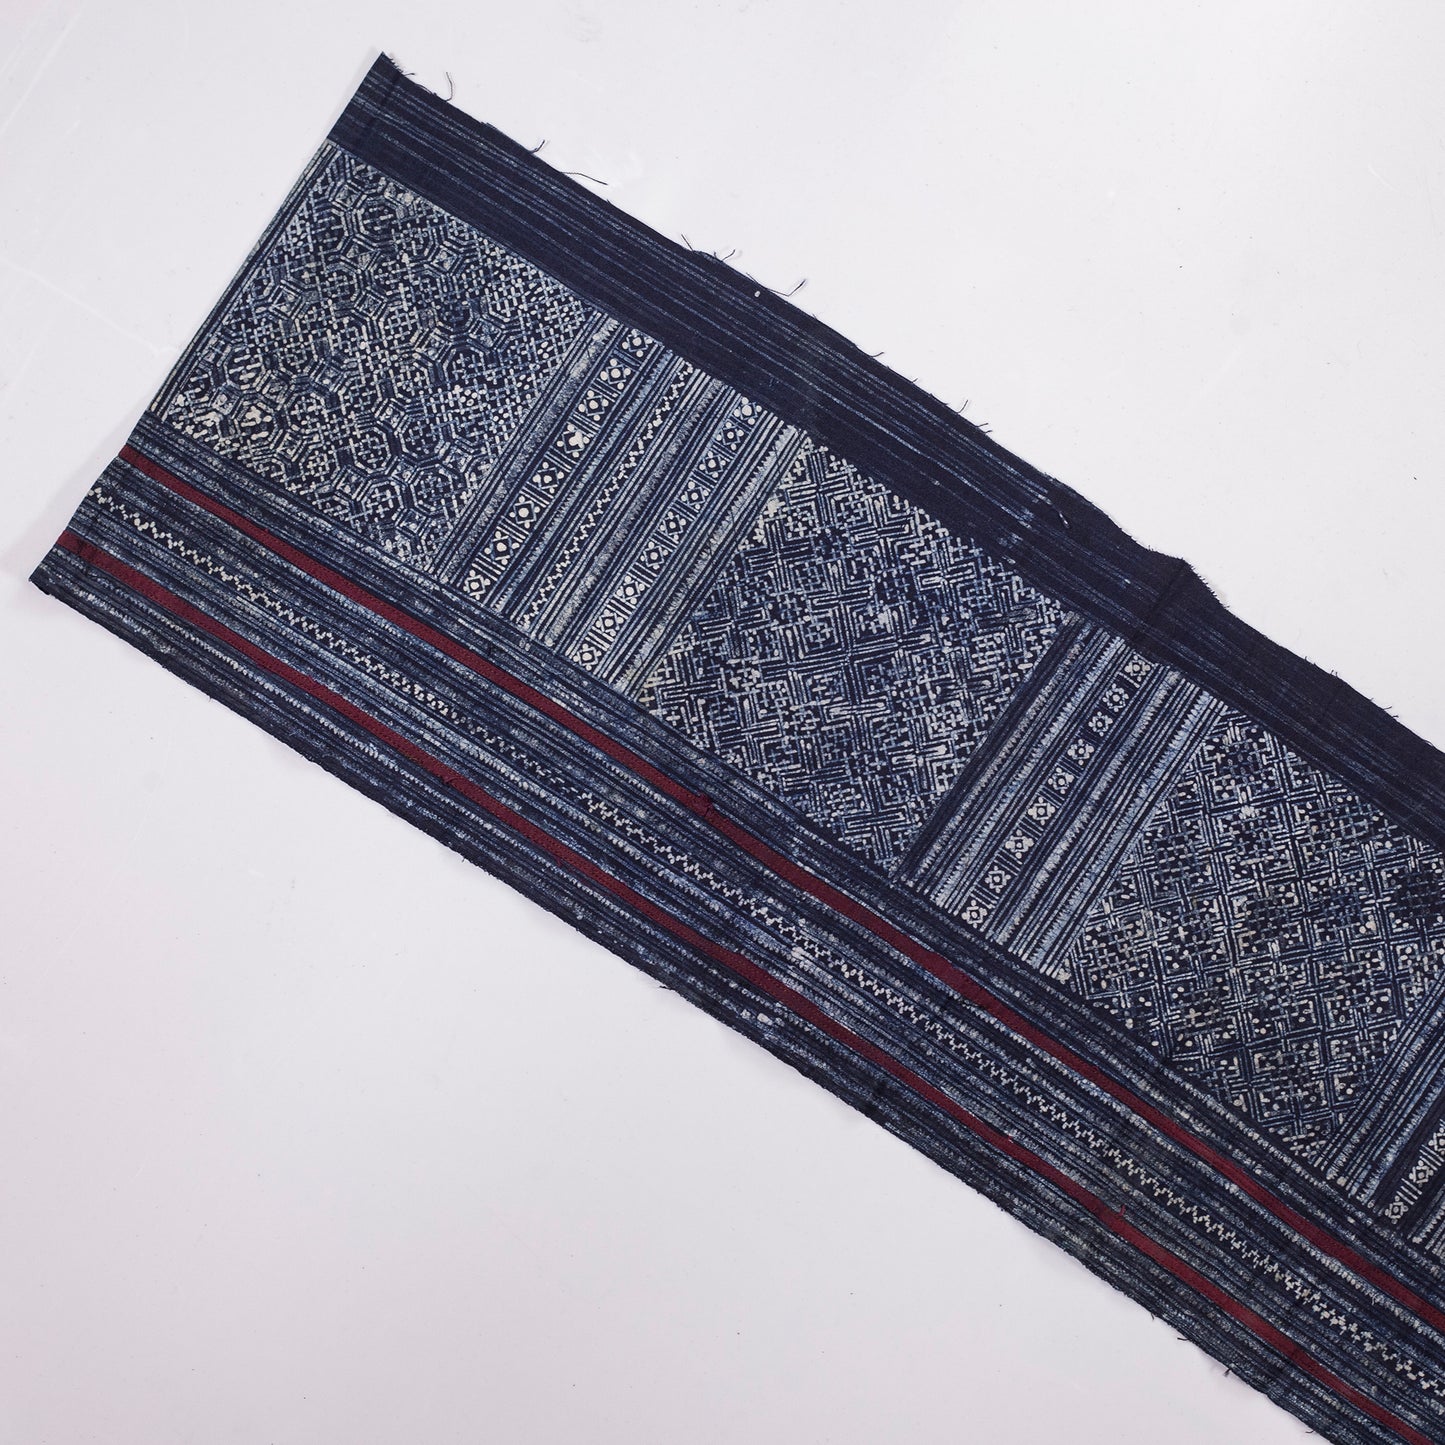 Authentic Vintage H'mong Hemp Textile – Indigo Batik in cotton